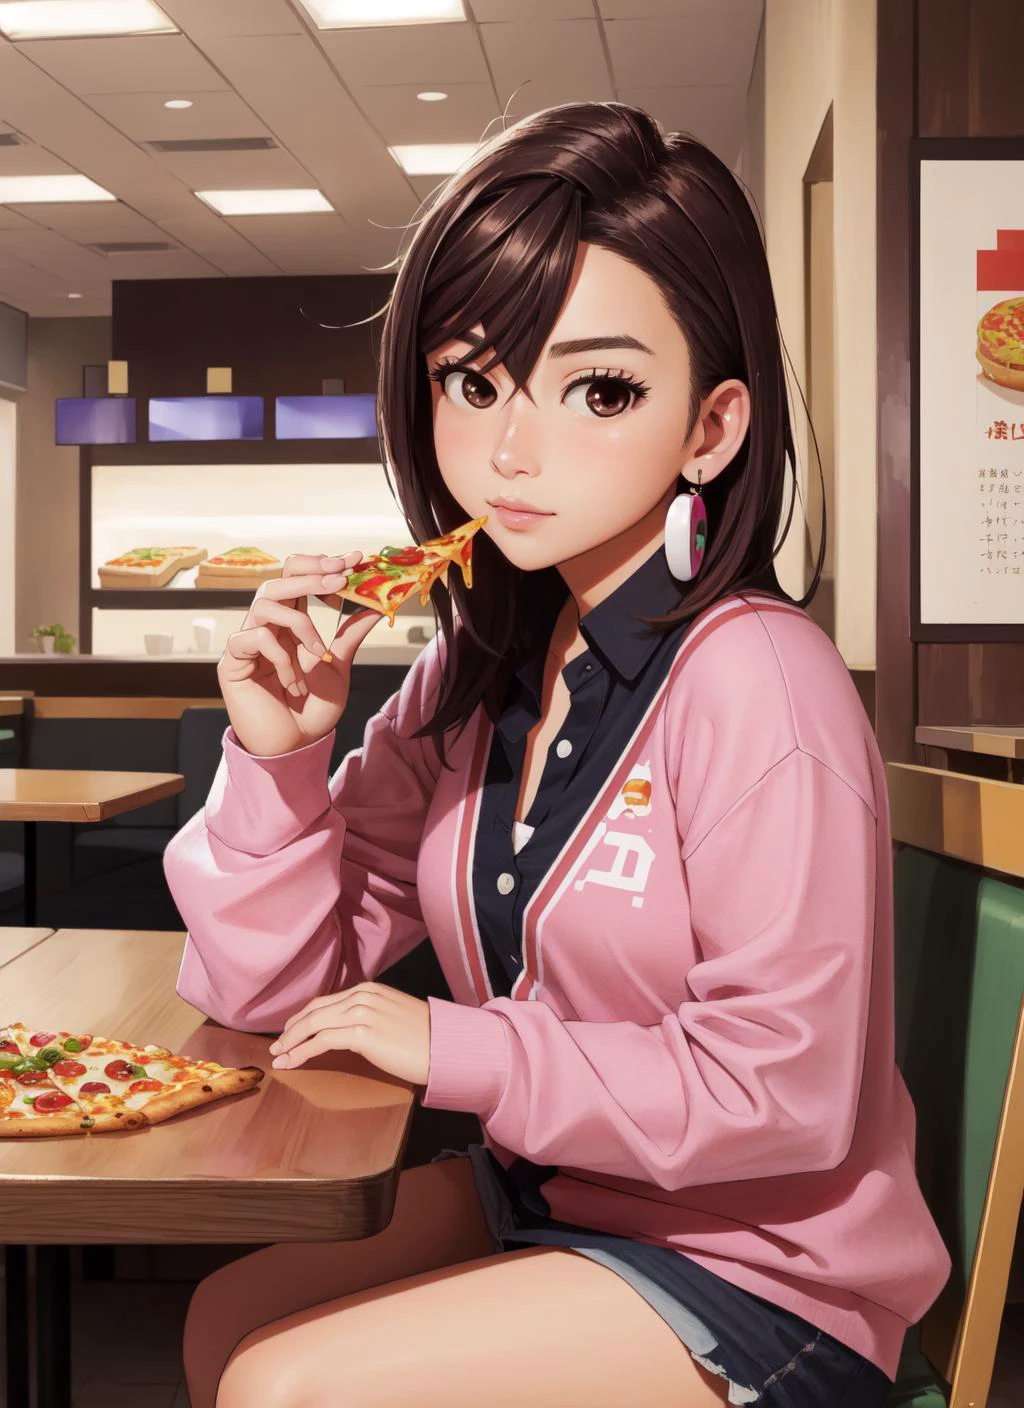 (Obra maestra, mejor calidad),  detalles intrincados, 
1 chica,        especies_ayase, 
restaurante de comida rápida, sentado en la mesa, comiendo pizza,